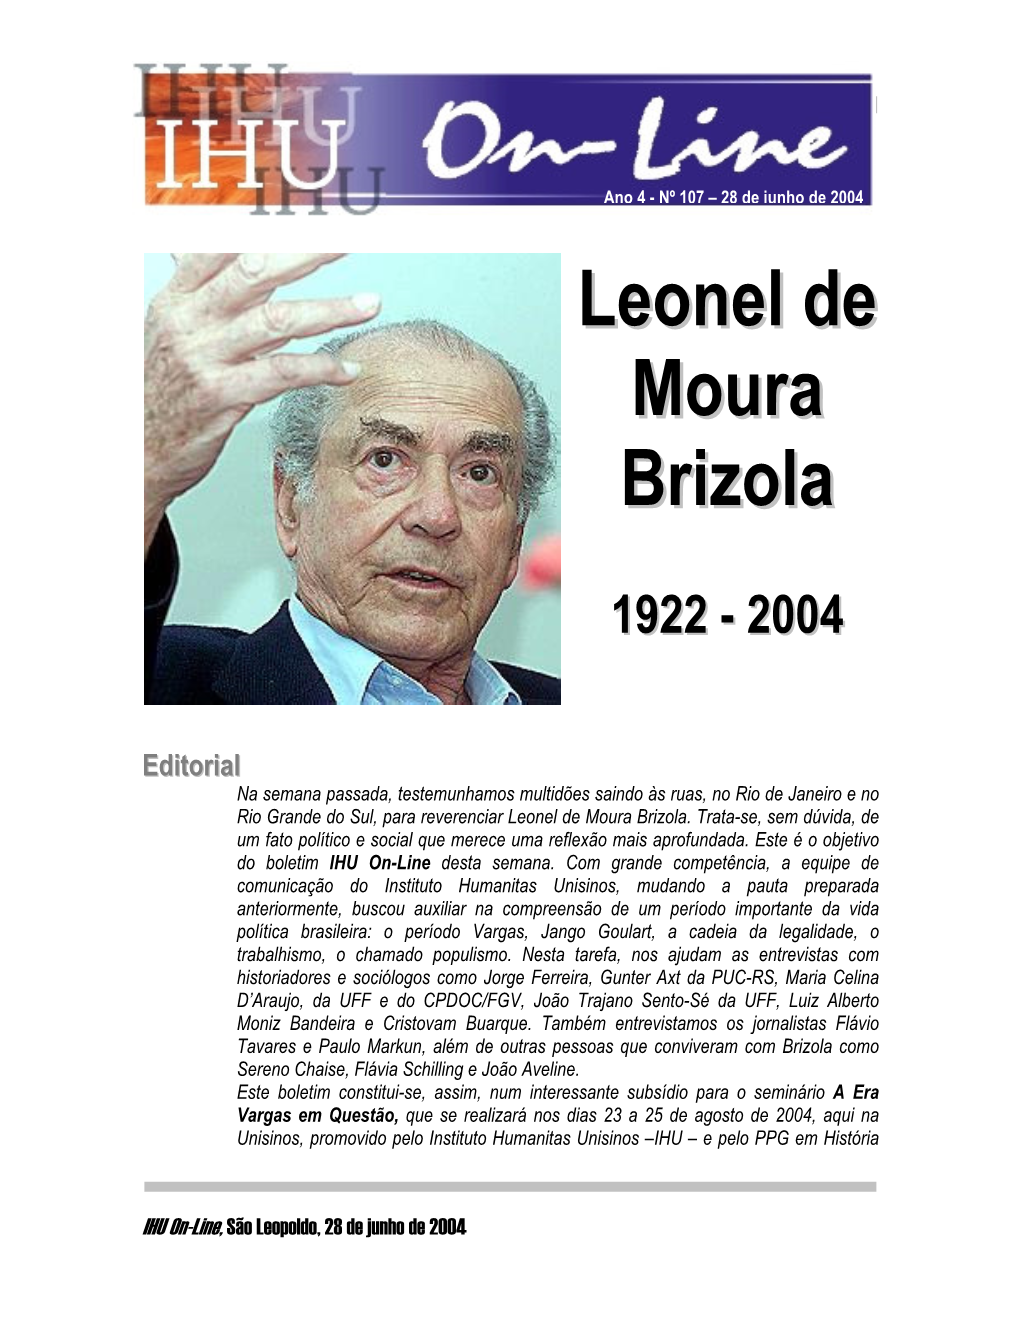 Leonel De Moura Brizola Biografia